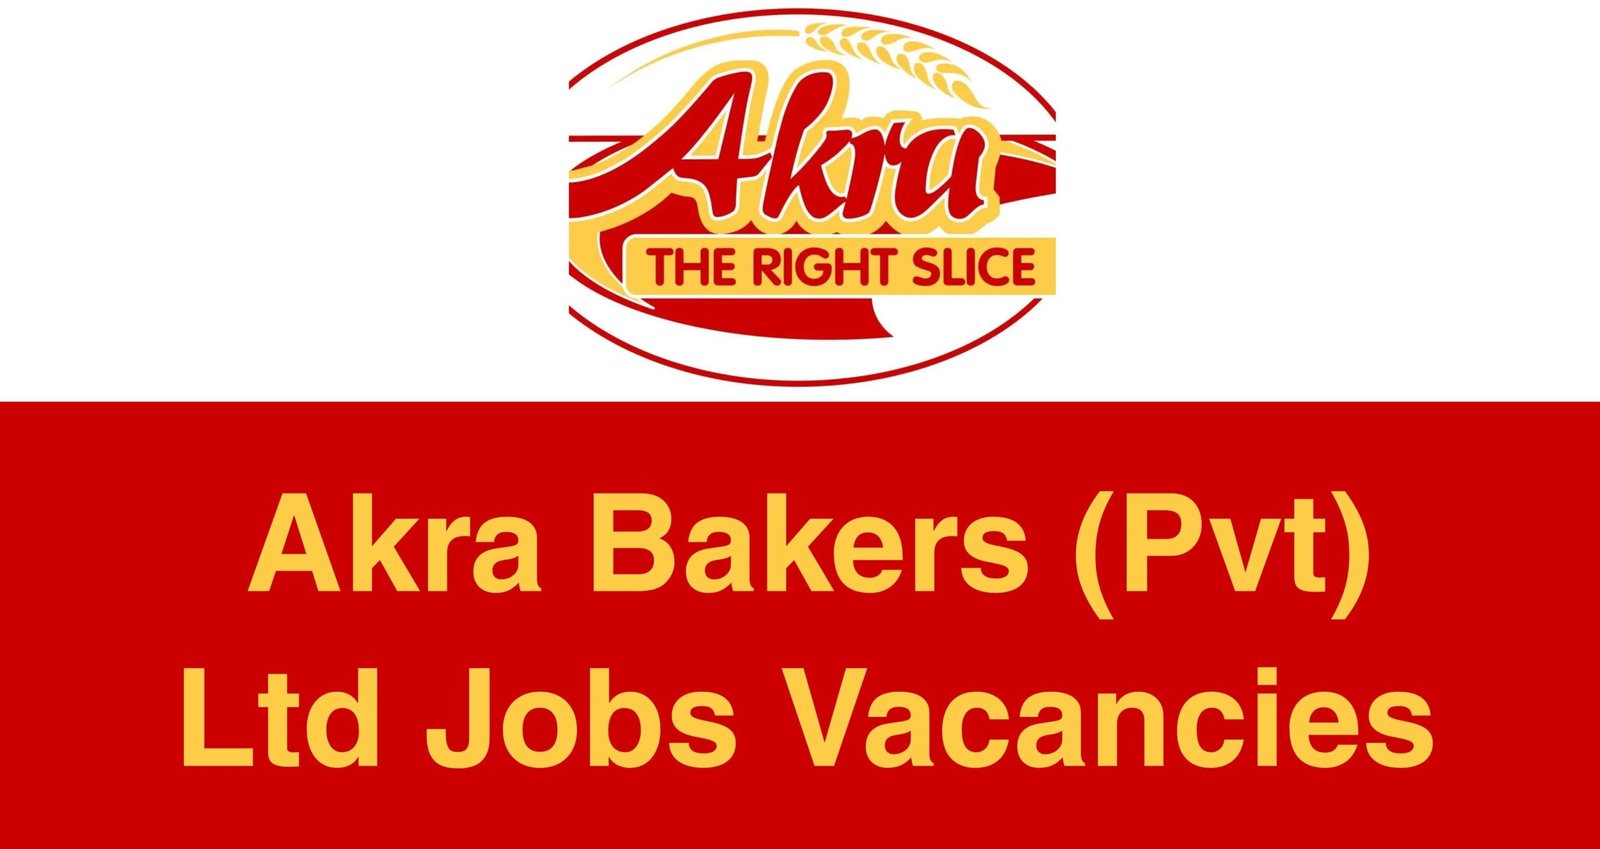 Akra Bakers (Pvt) Ltd Jobs Vacancies